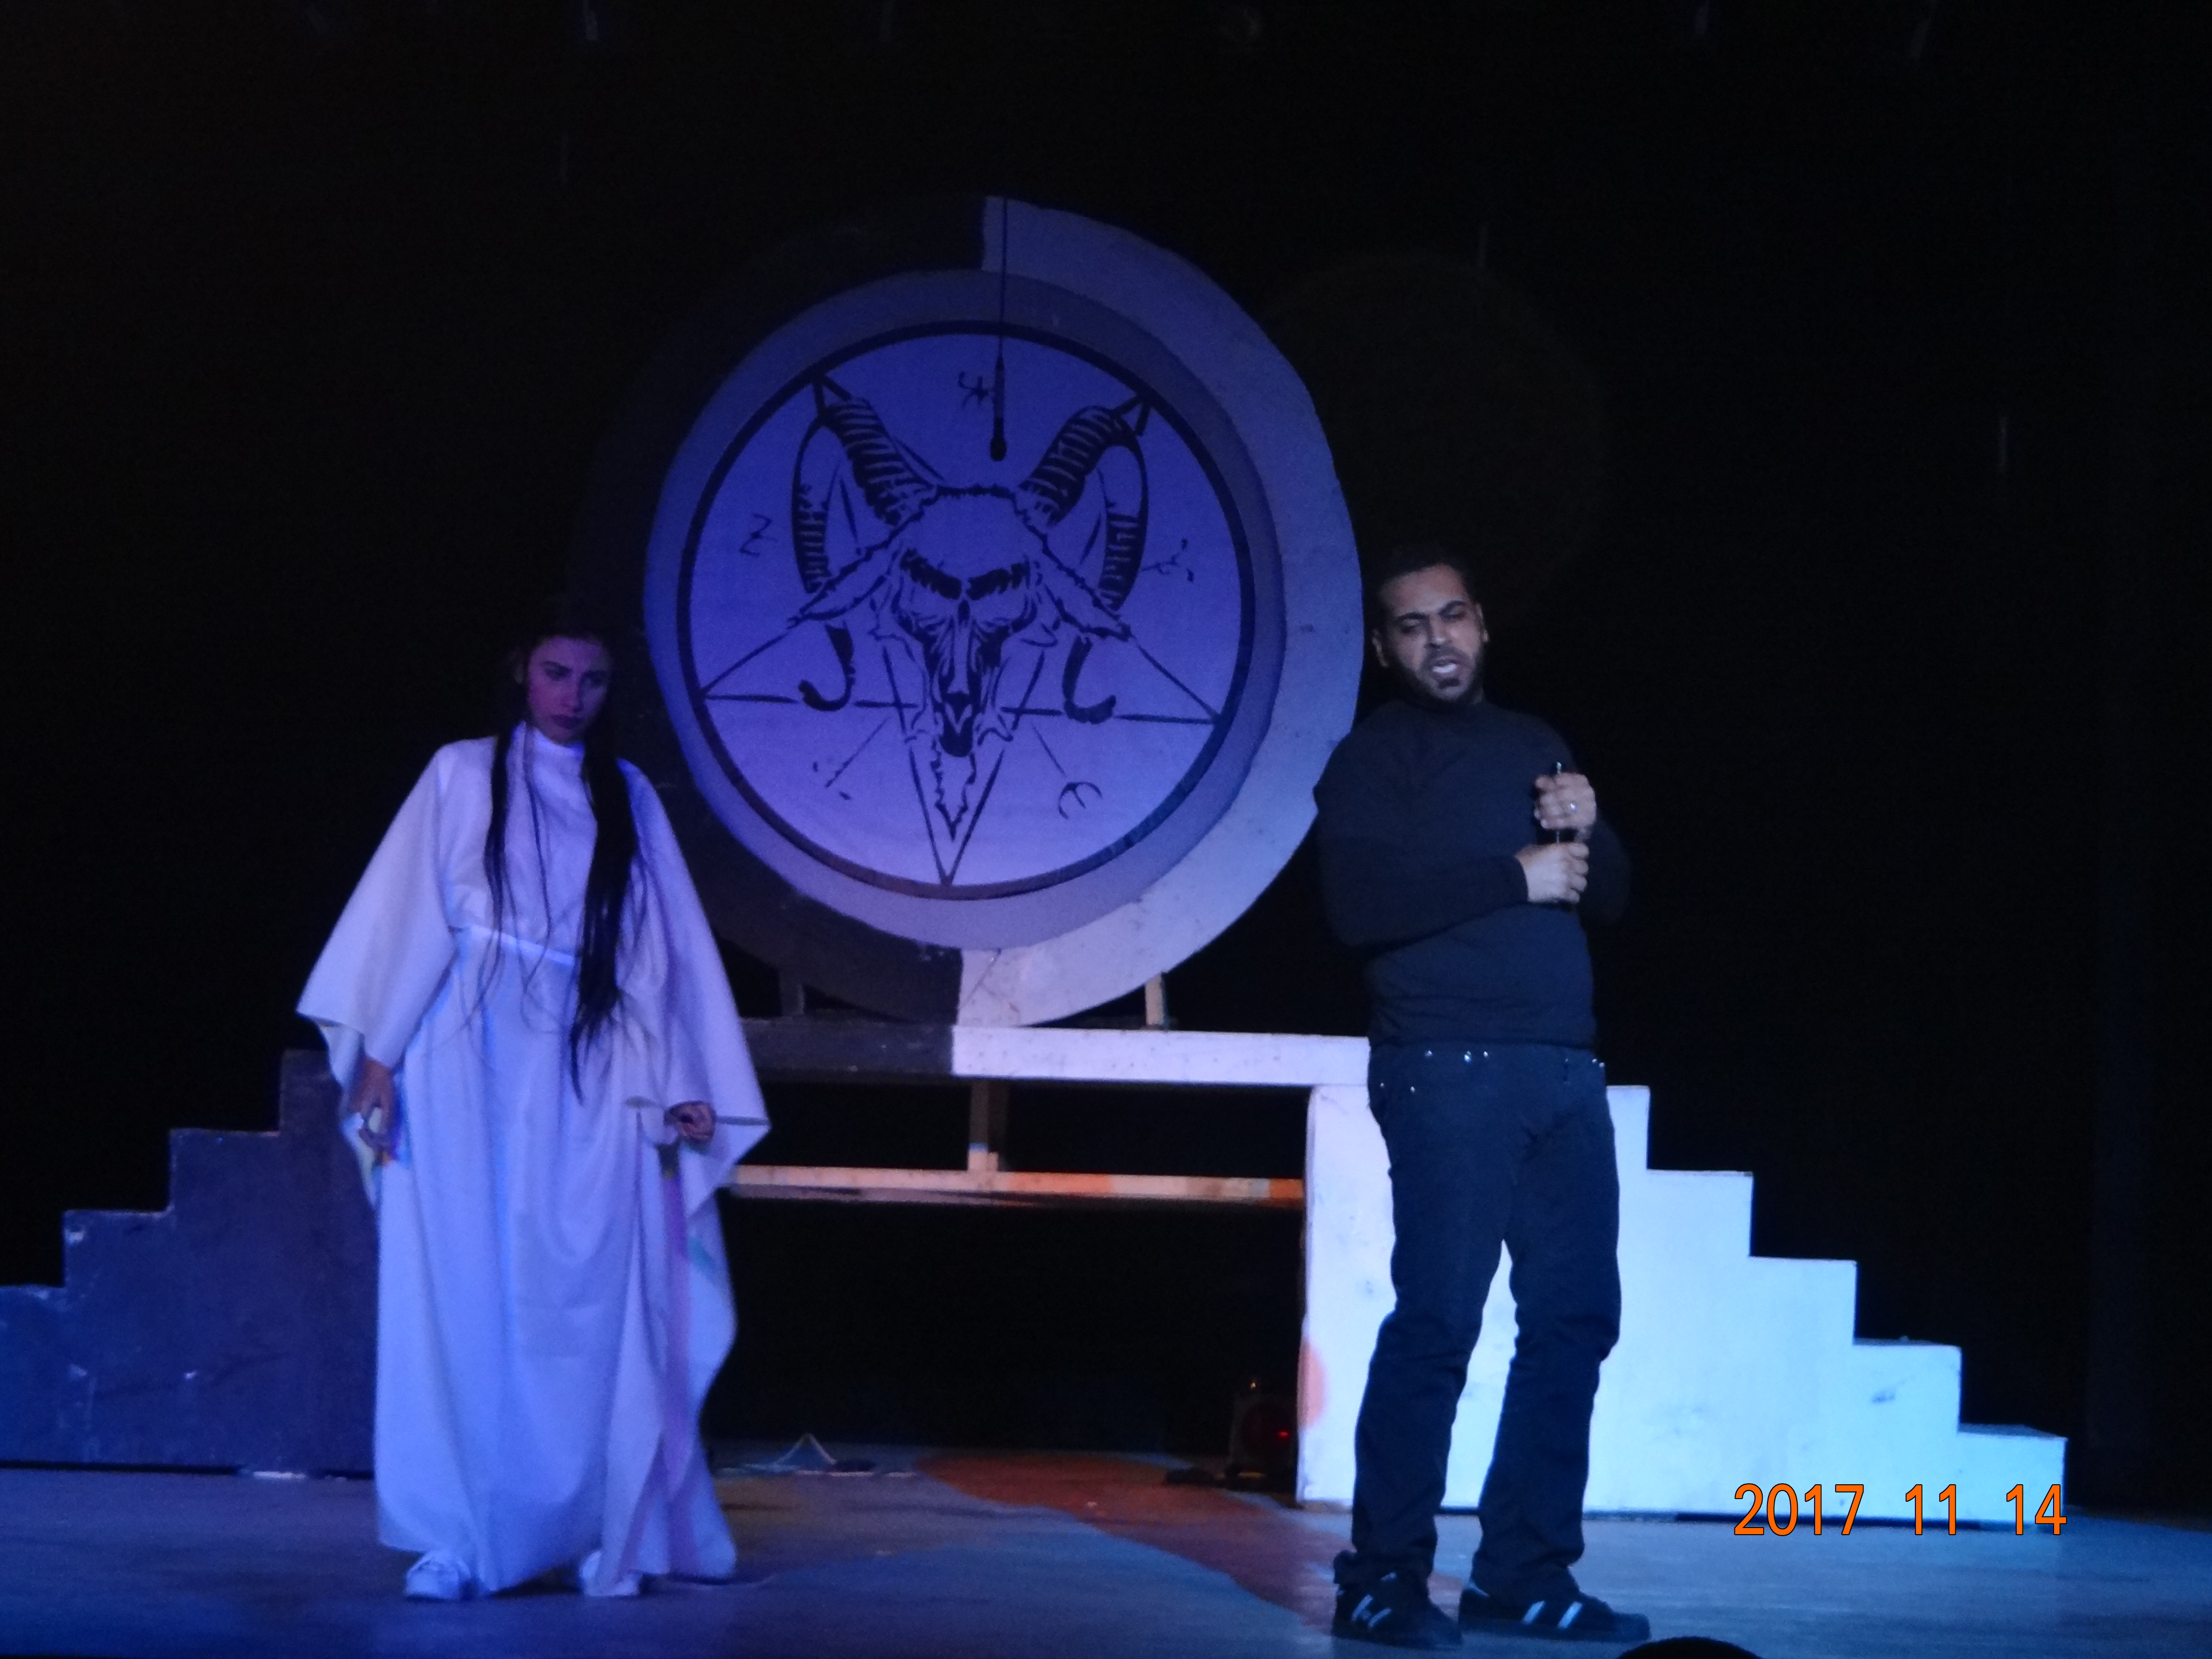 مهرجان مسرح الهواة في الجمعيات الثقاقية يقدم مسرحية مدينة المسوخ على مسرح المركز الثقافى بالجيزة (5)